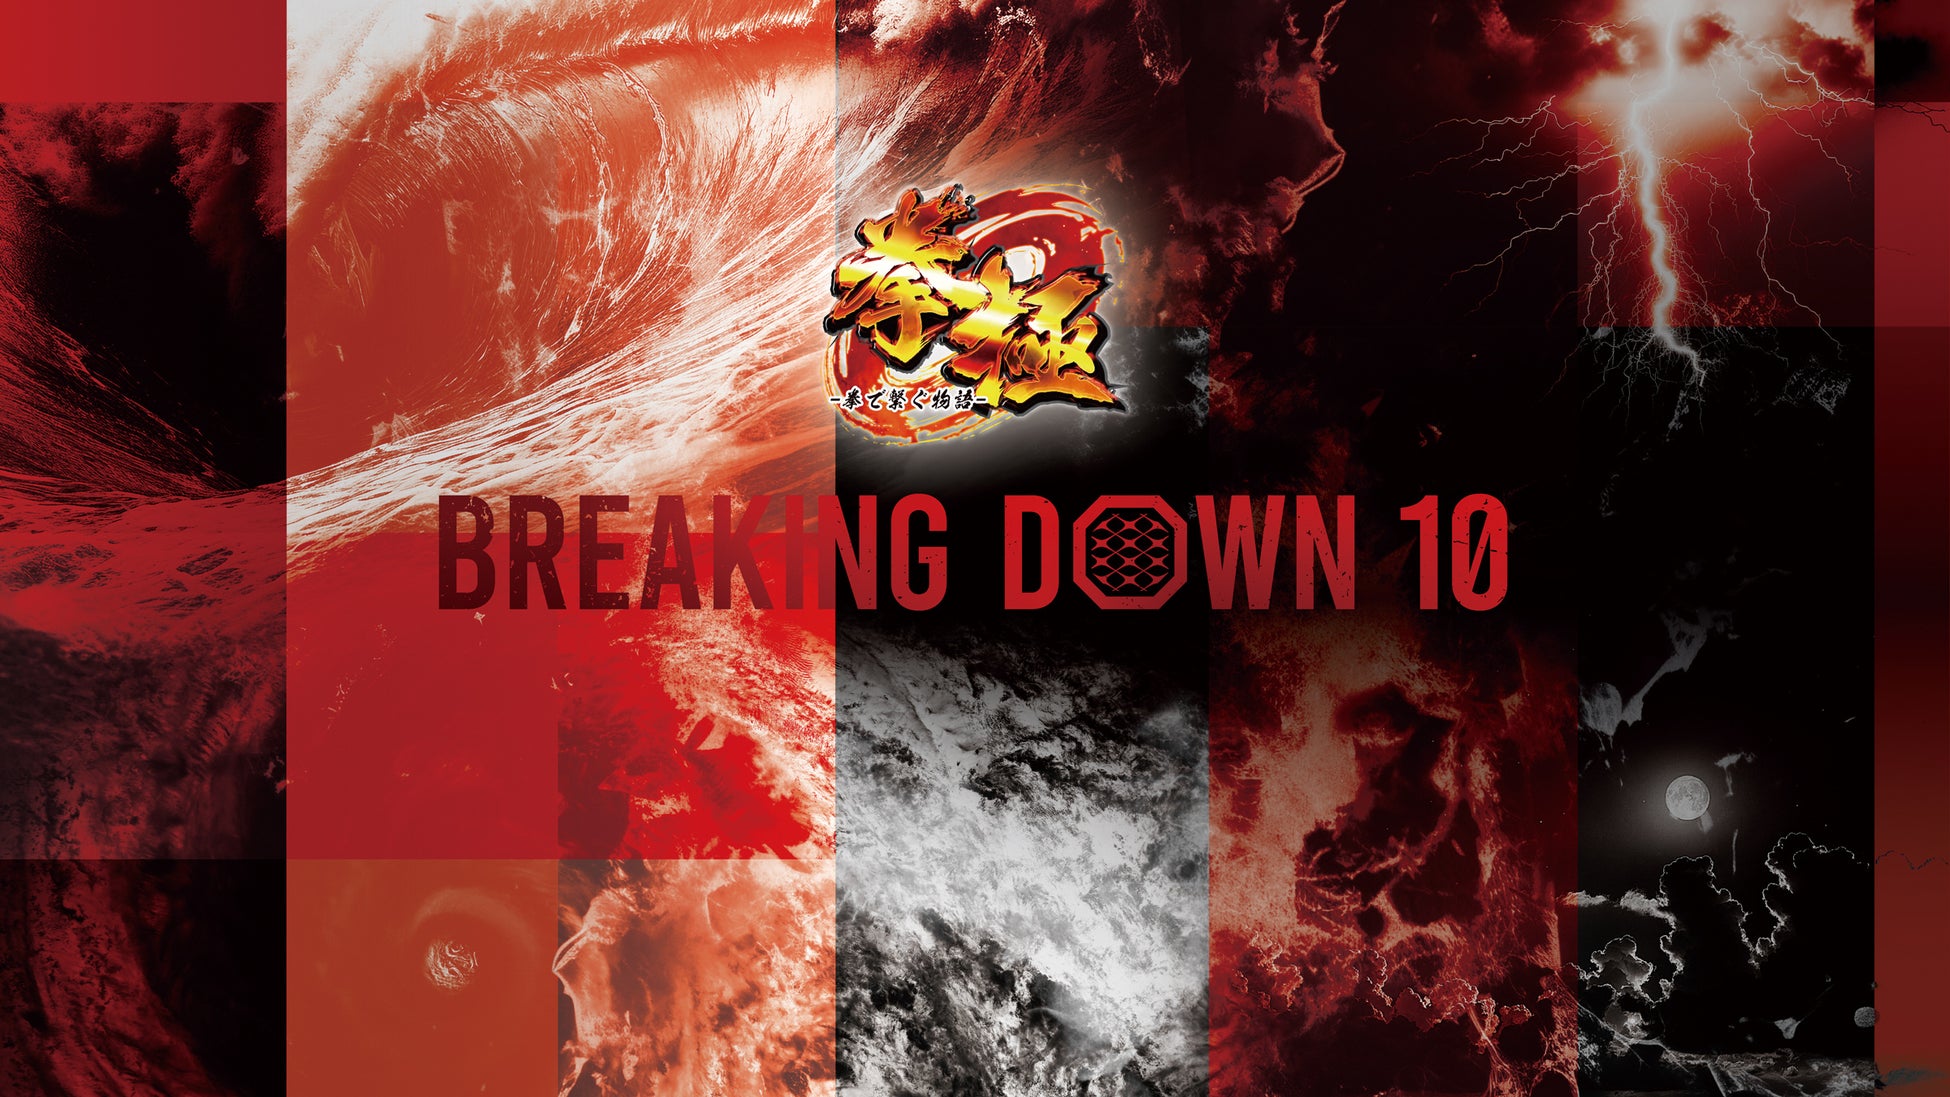 ゲームアプリ「拳極」をメインスポンサーに『BreakingDown10』が開催決定